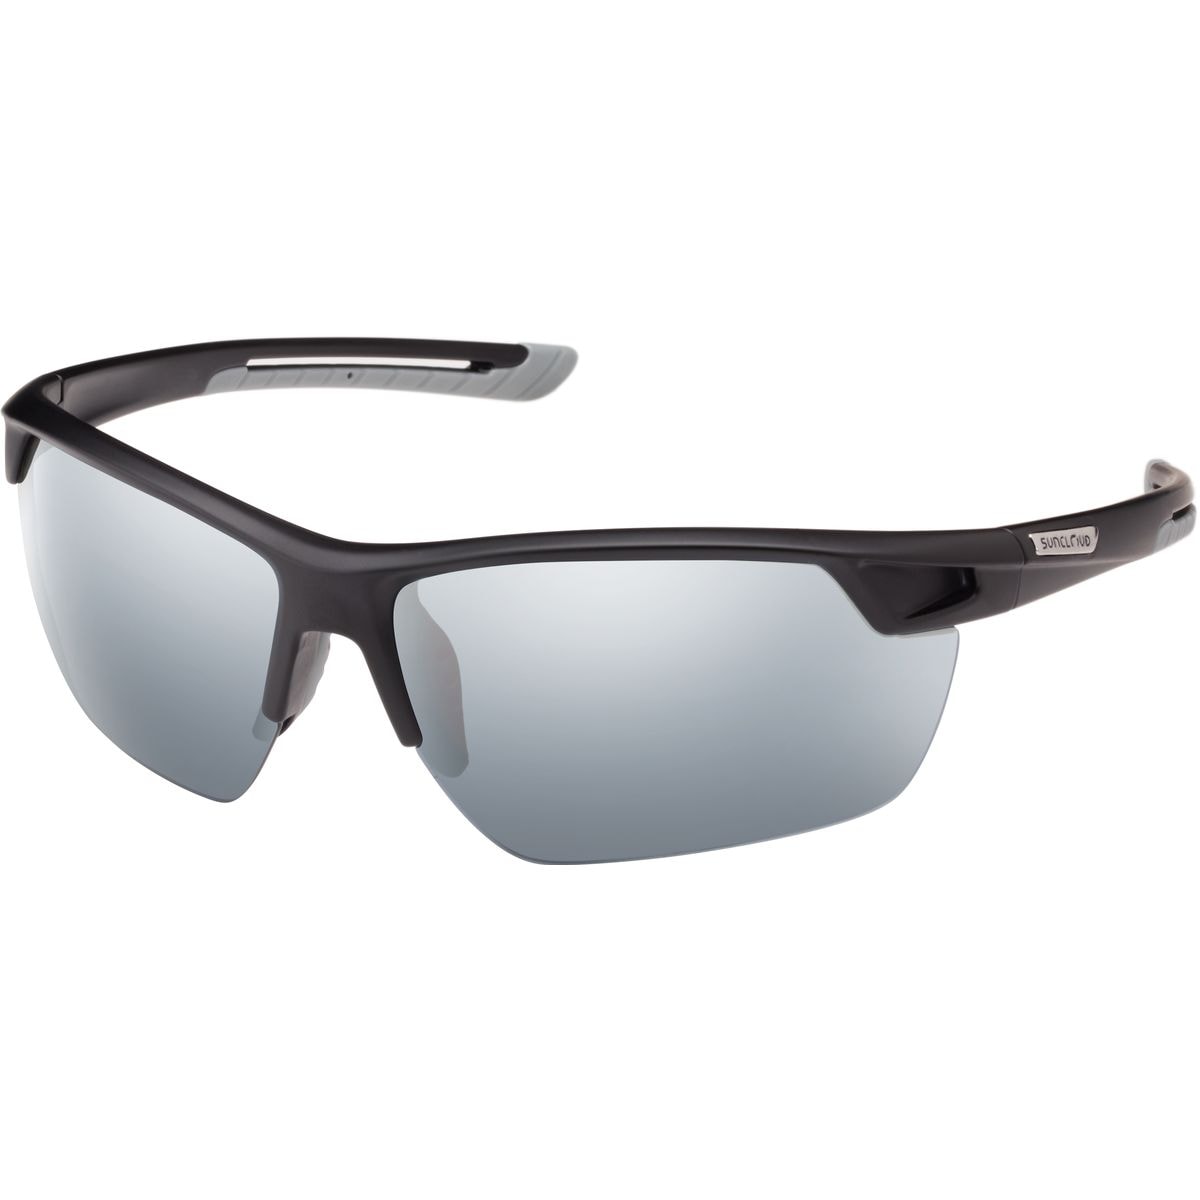 Поляризованные солнцезащитные очки contender Suncloud Polarized Optics, цвет matte black/silver mirror очки солнцезащитные stylemark polarized l1454a